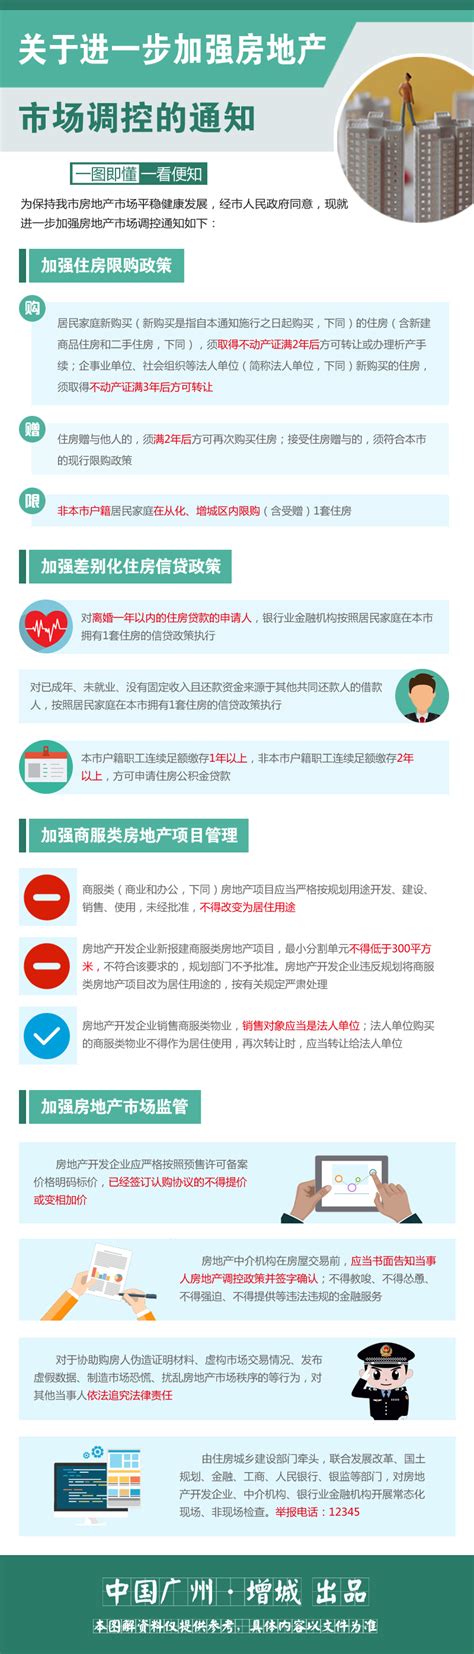 广州市进一步加强房地产市场调控政策_房家网